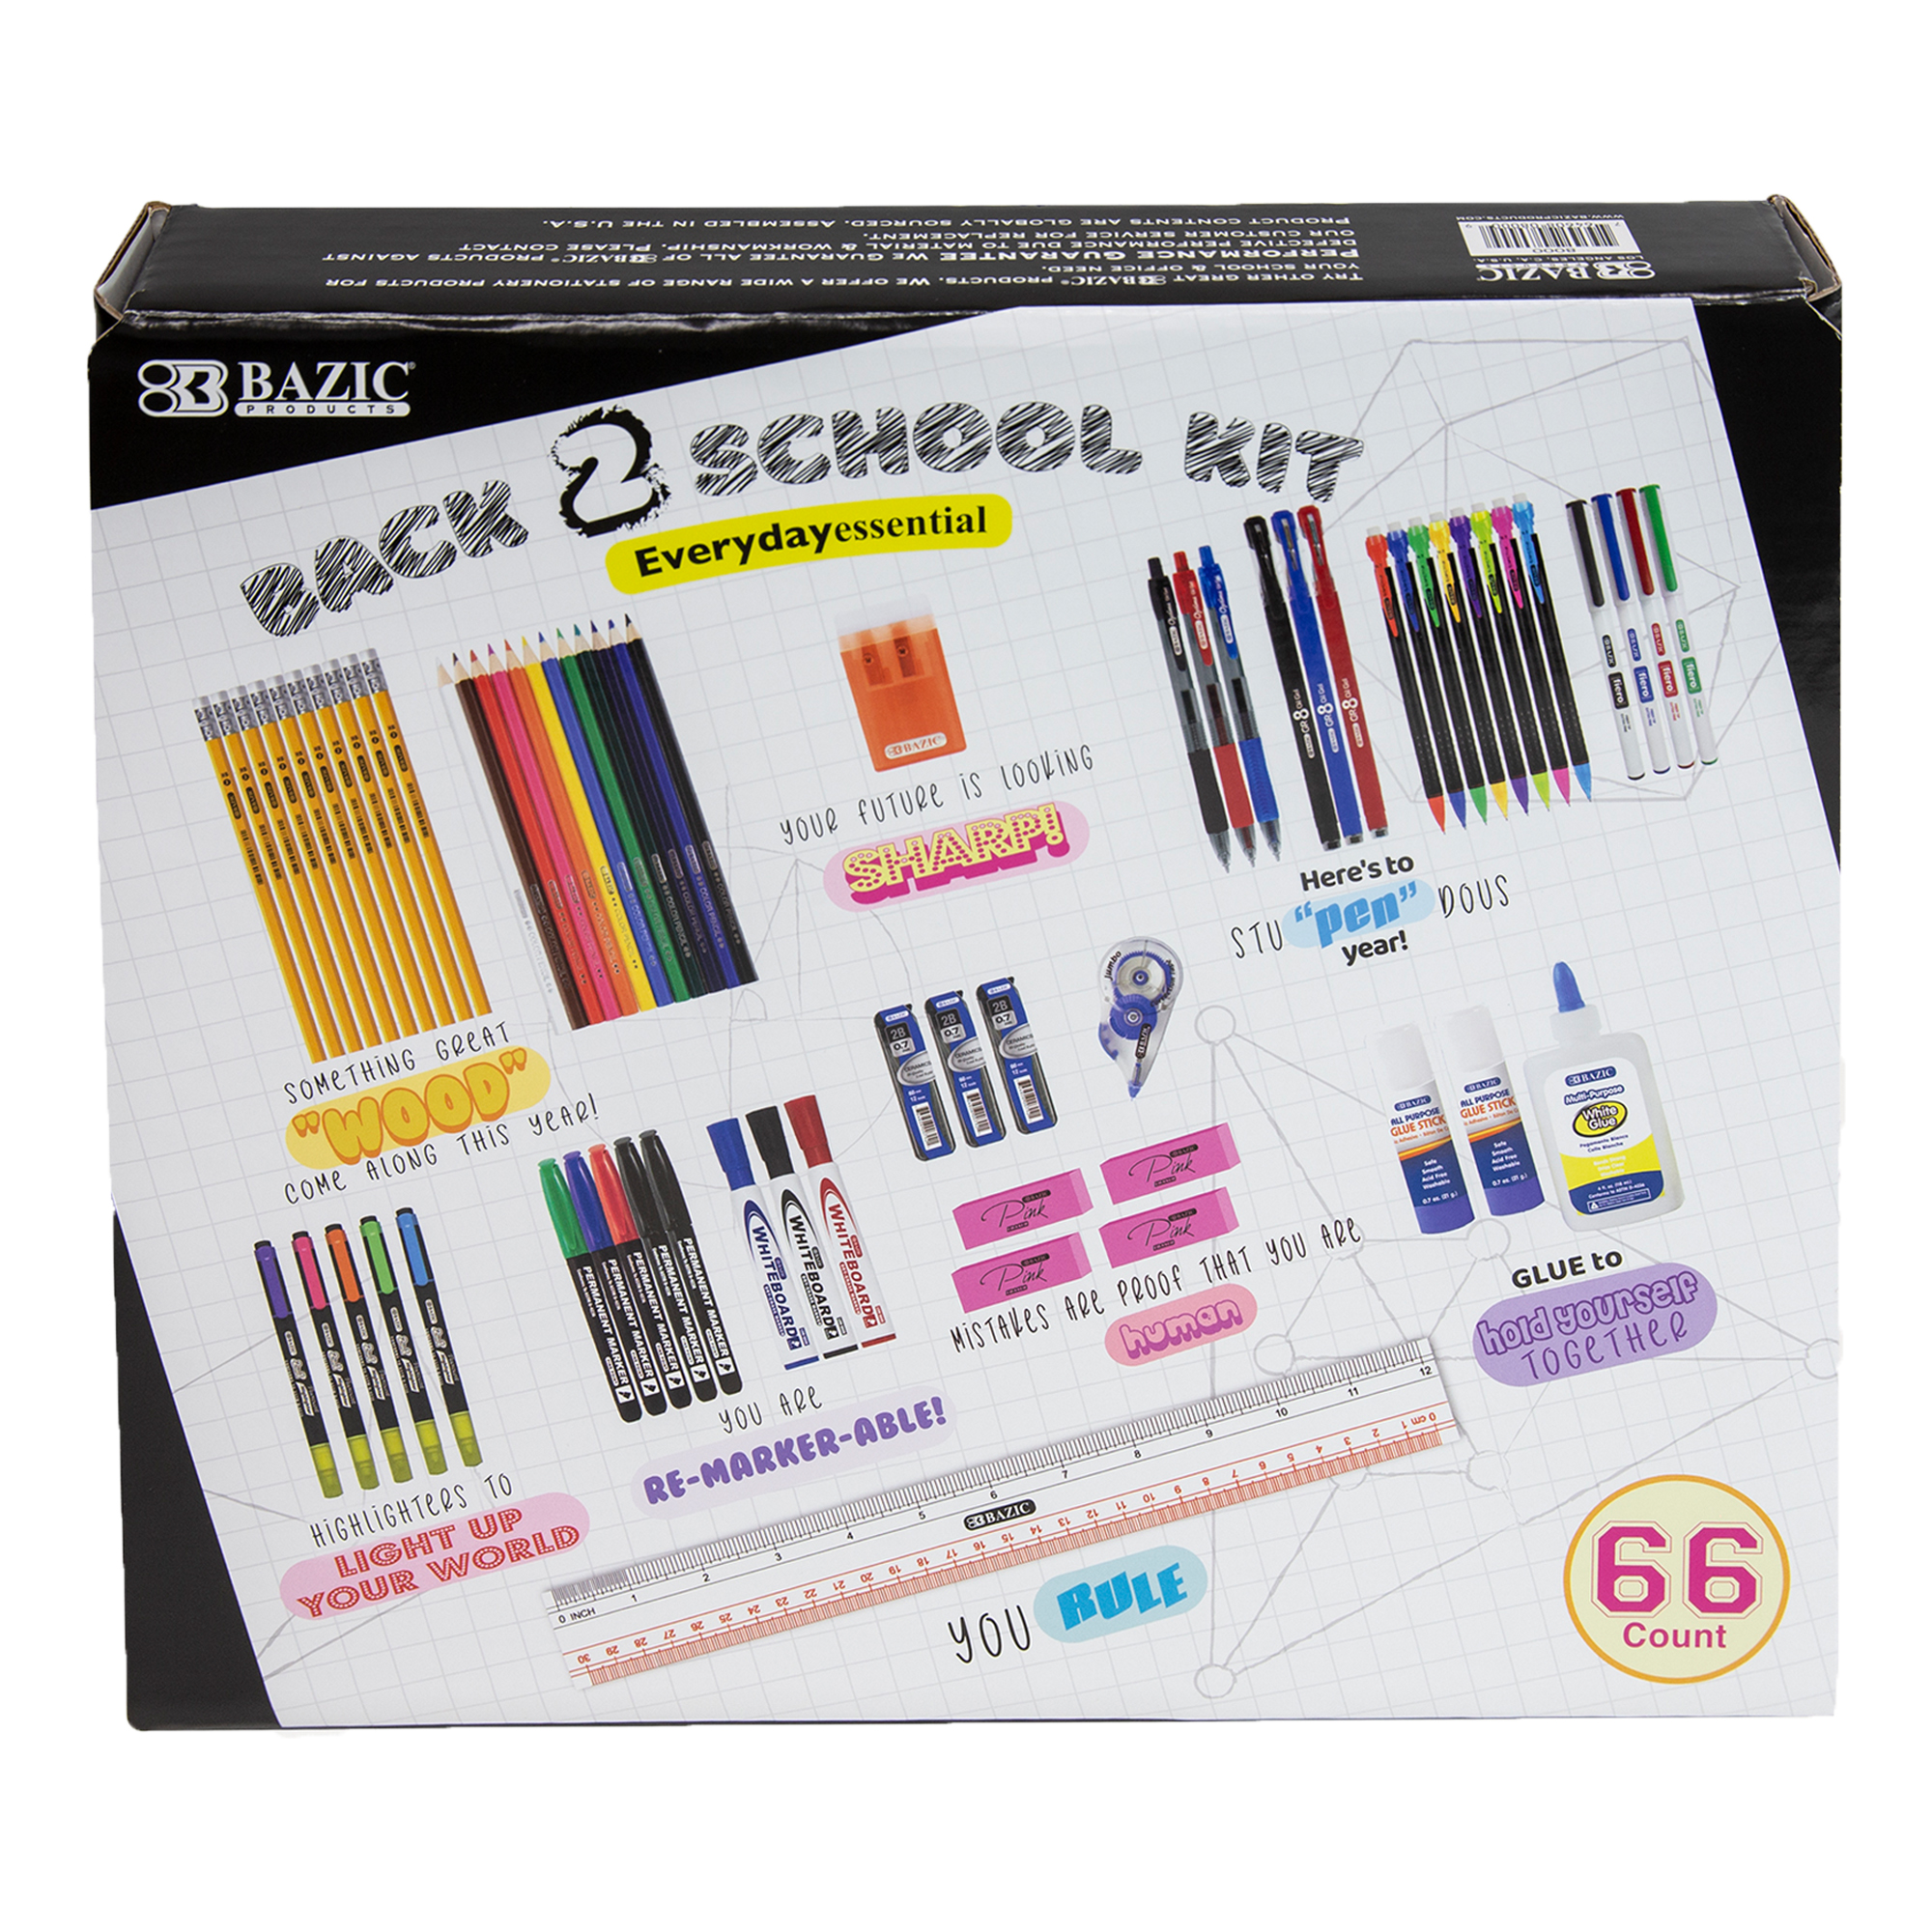 Mega School Supplies Variety Pack - School Pack - Back kit- 110 Pieces -  School Supplies - School Supply Bundle School Pack School Supplies Kit  Bundle